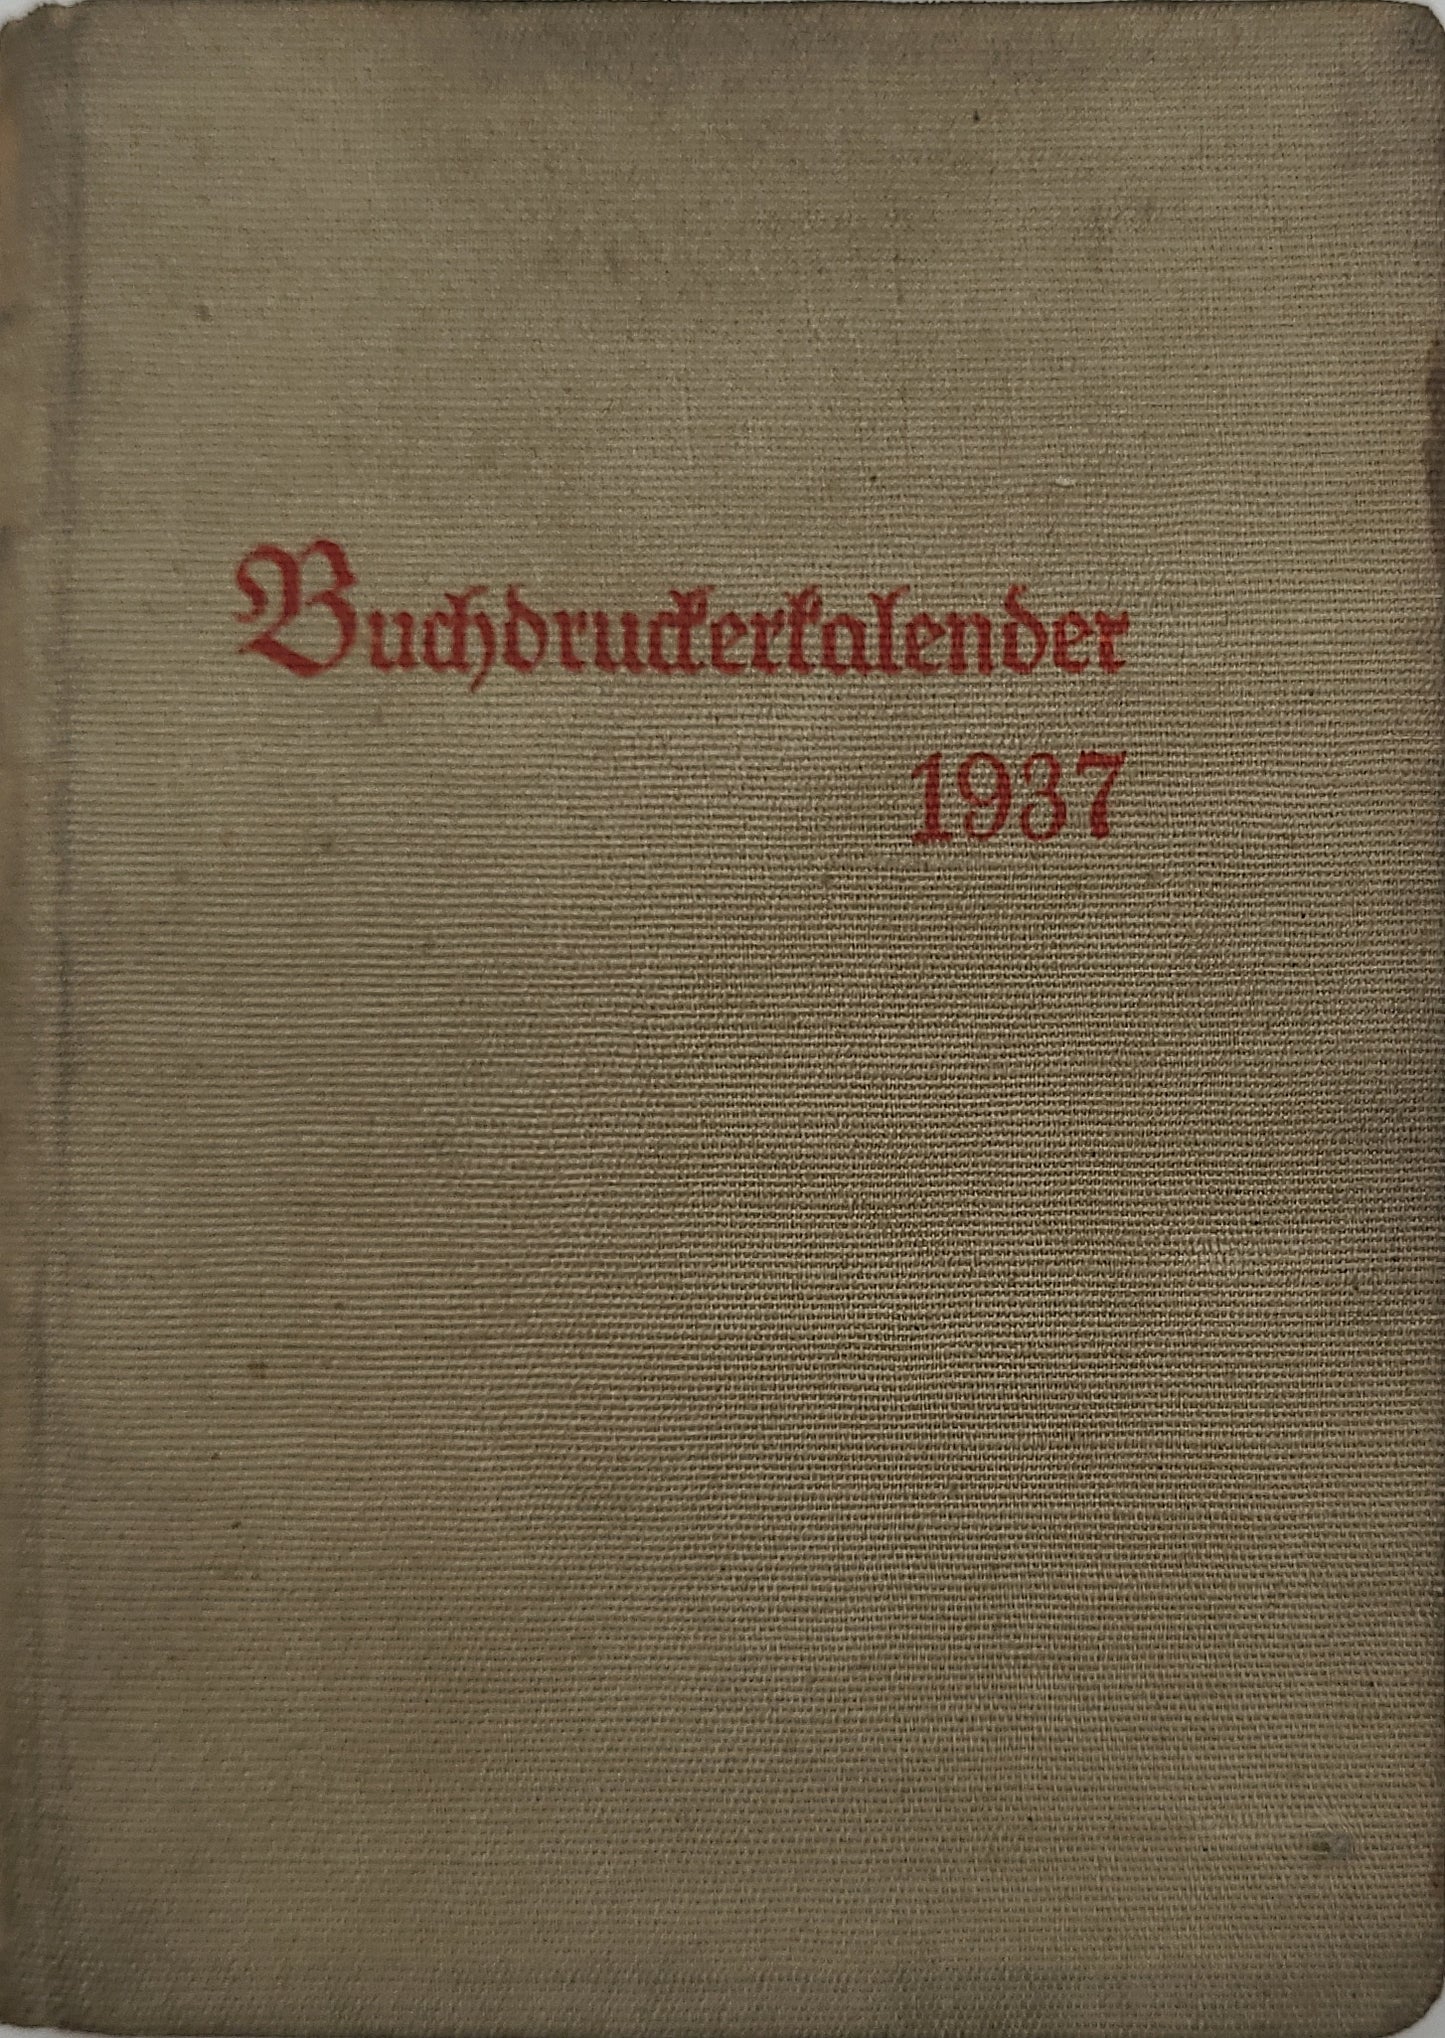 Buchdrucker-Kalender 1937